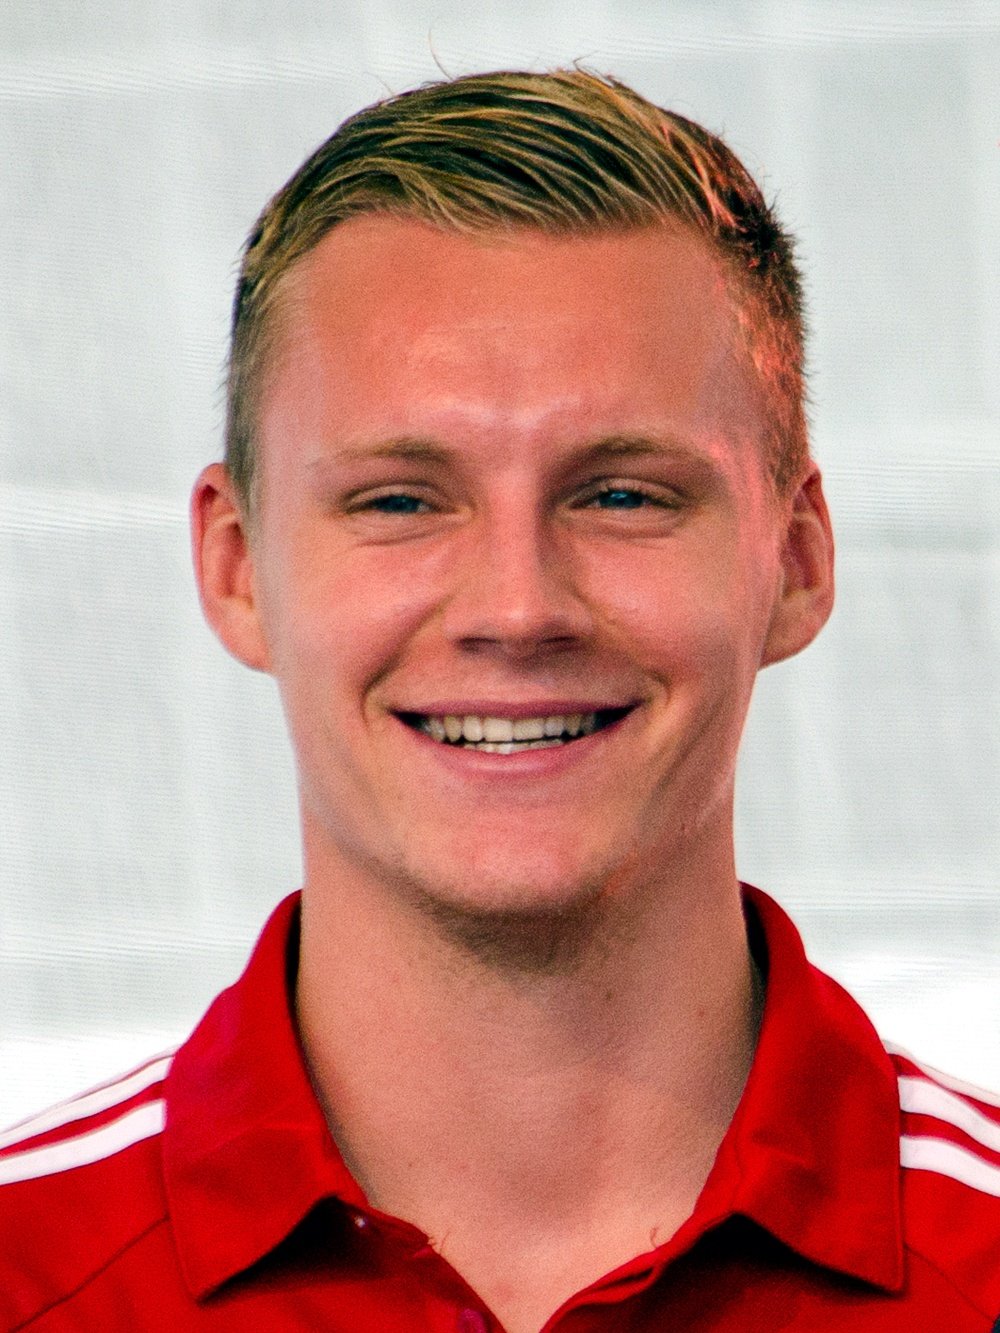 Bernd Leno, portero del Bayer 04 Leverkusen de la Bundesliga de Alemania.